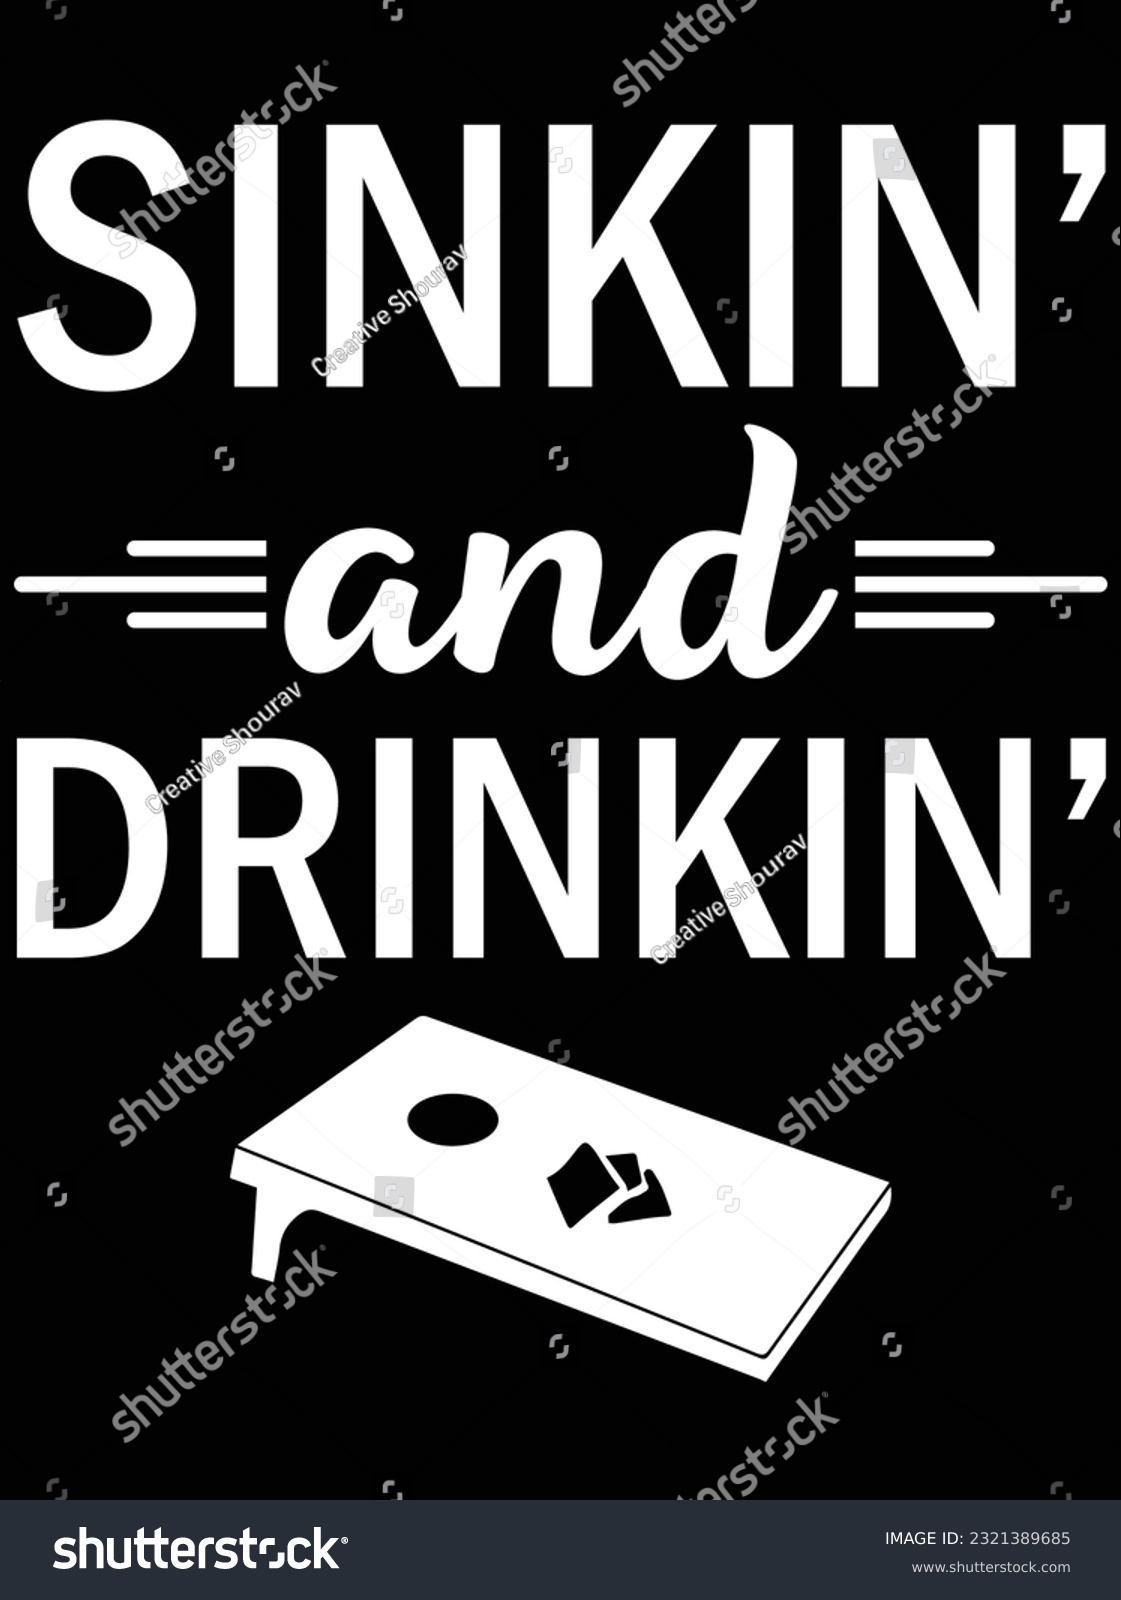 SVG of Sinking and drinking design vector art design, eps file. design file for t-shirt. SVG, EPS cuttable design file svg